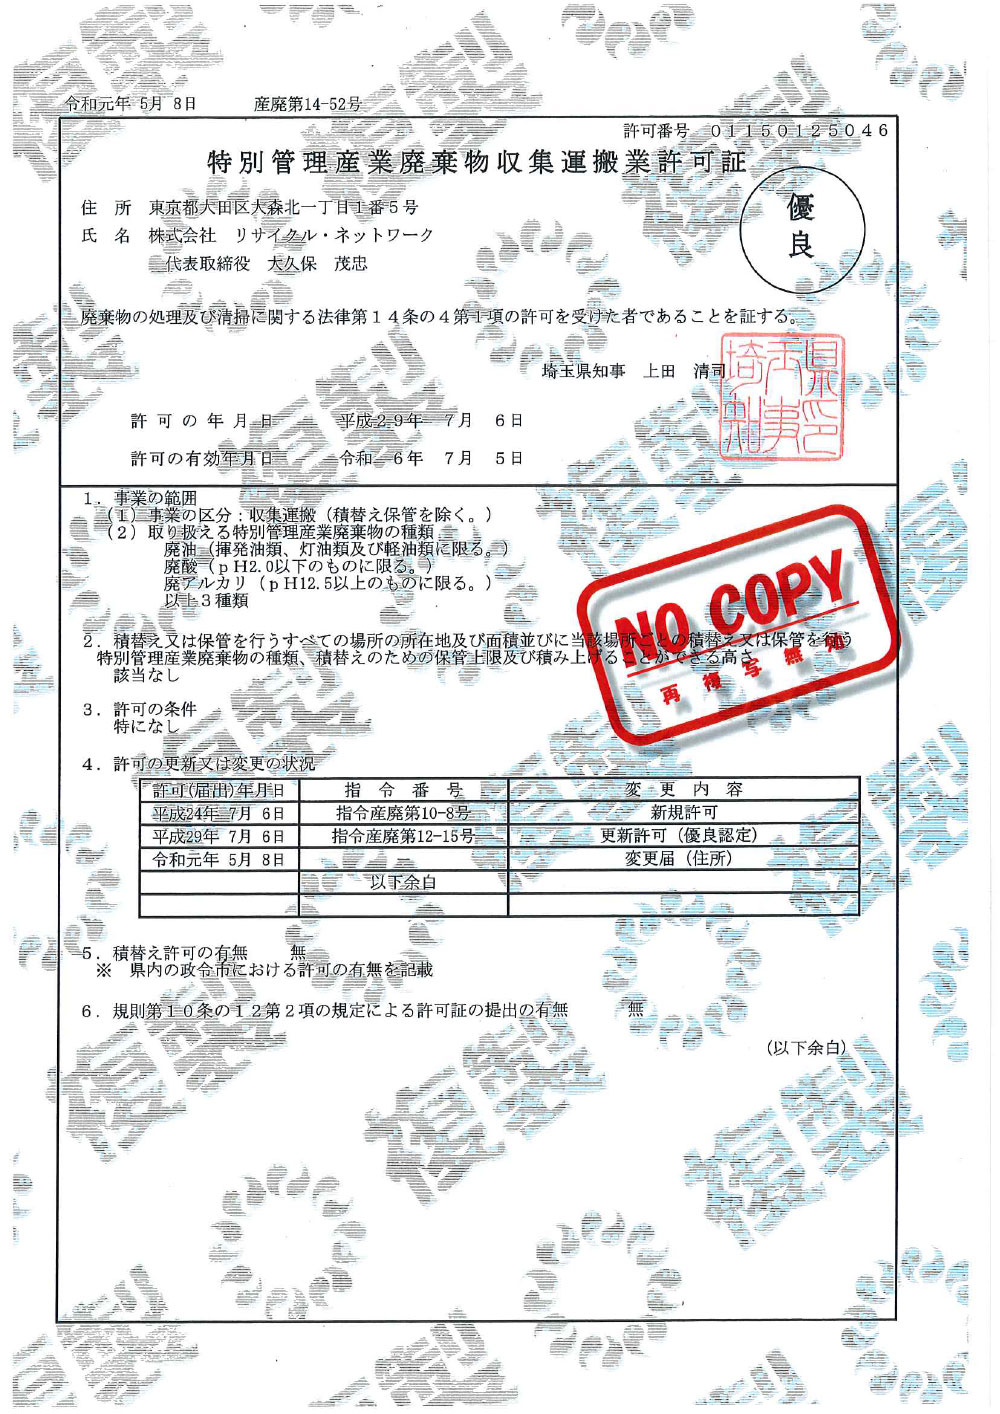 埼玉県 特別管理産業廃棄物収集運搬許可証